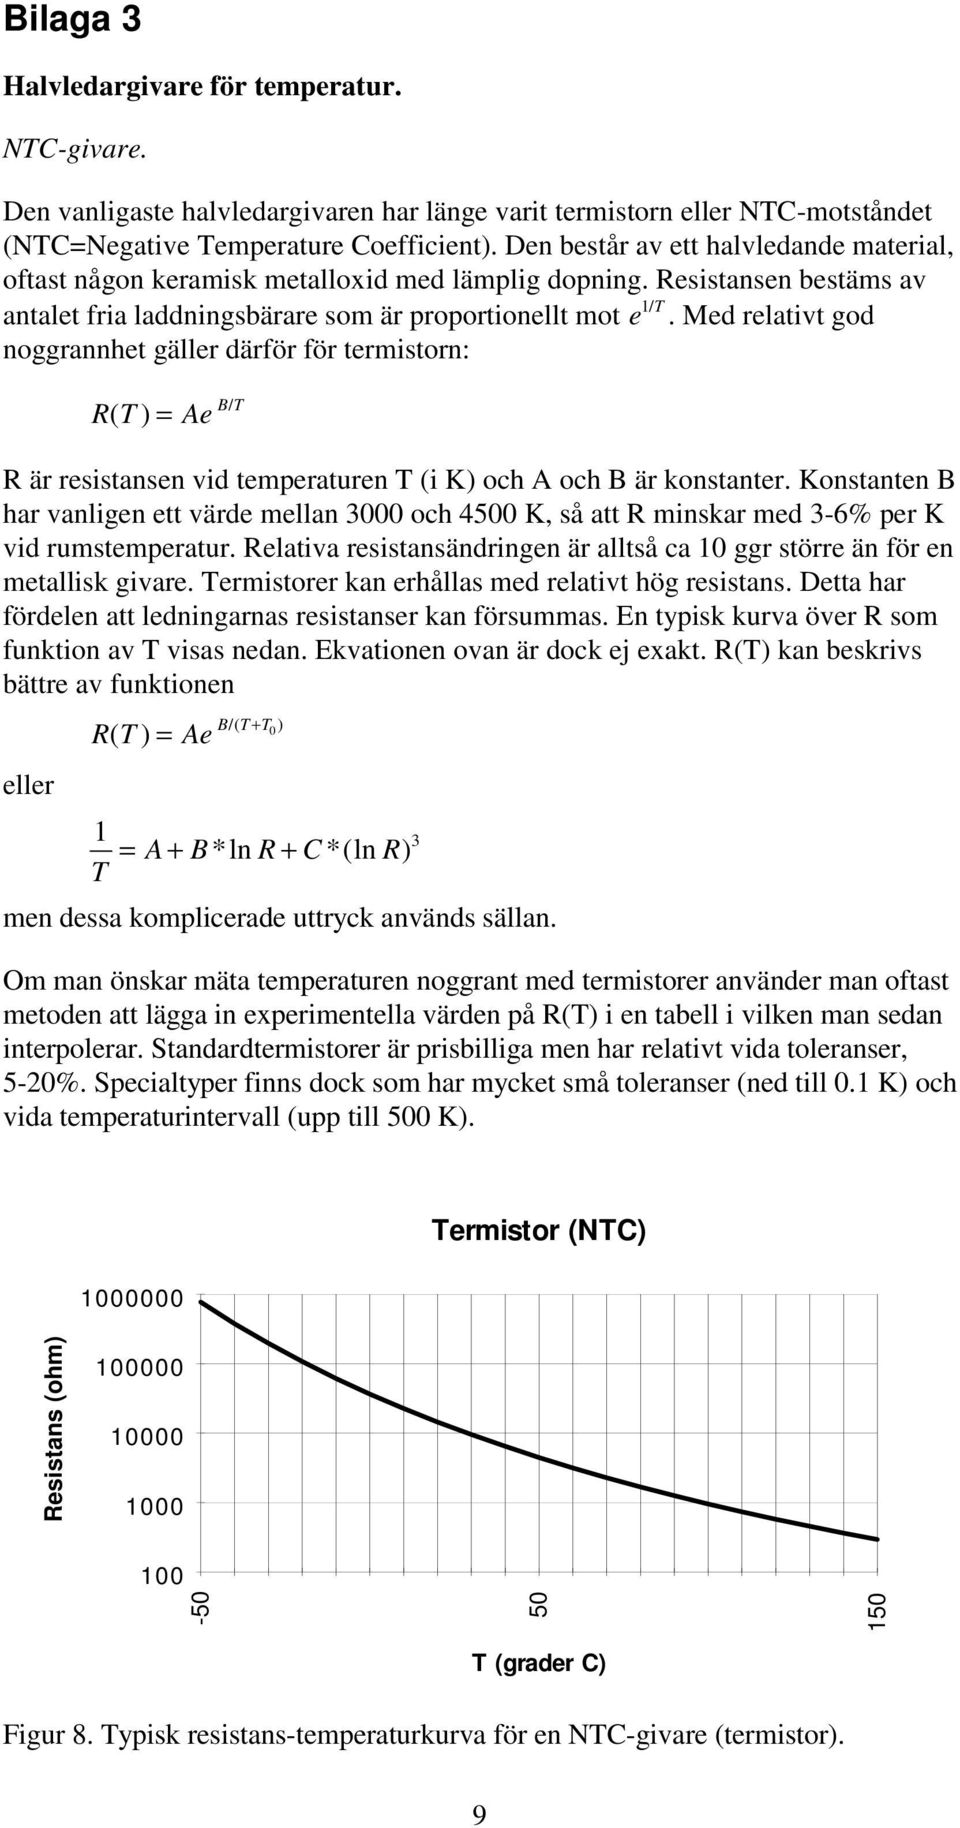 Med elativt god noggannhet gälle däfö fö temiston: T ( Ae BT / ä esistansen vid tempeatuen T (i K och A och B ä konstante.